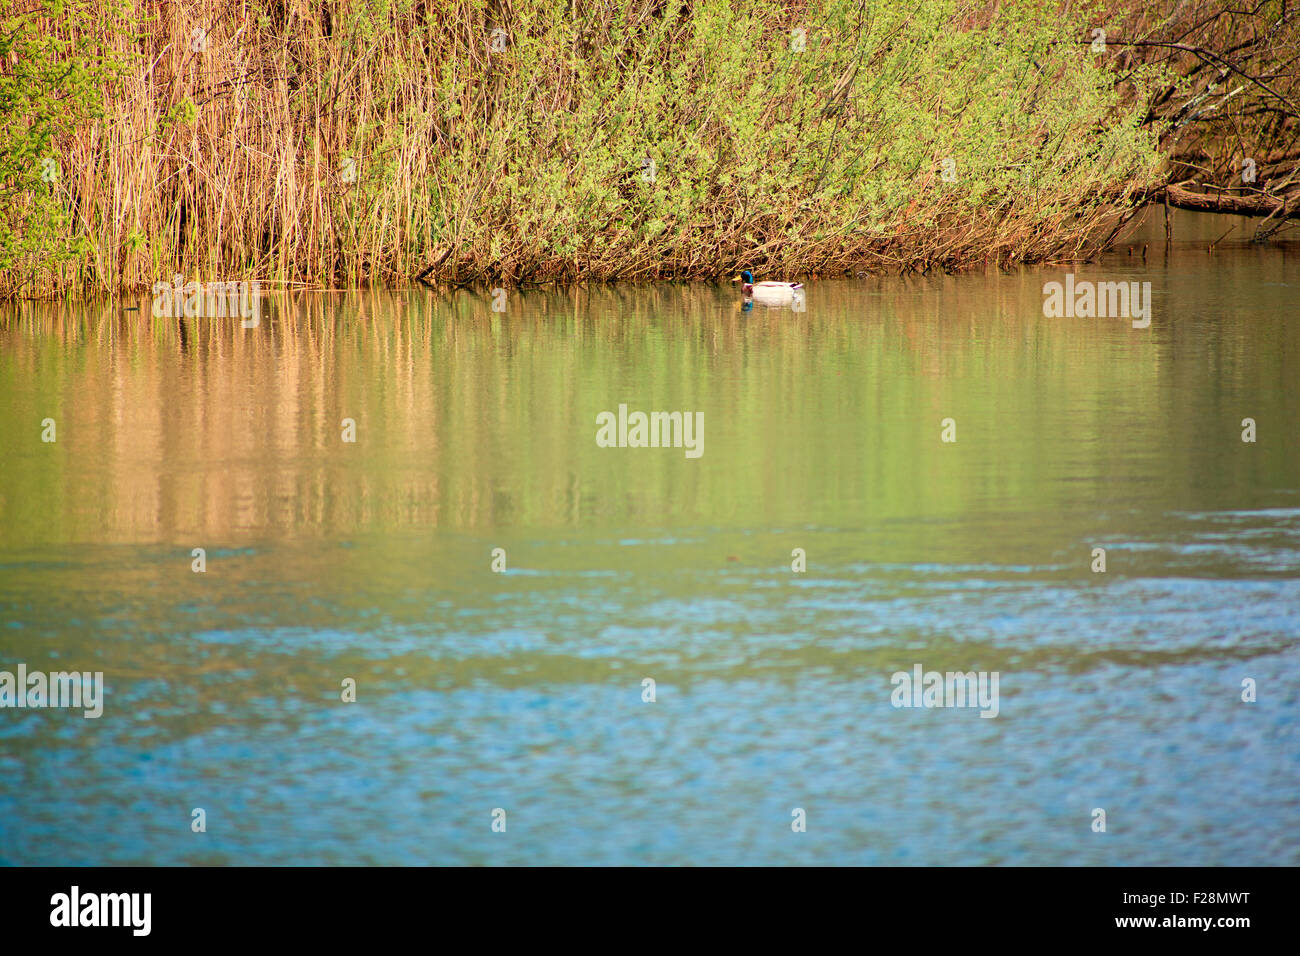 Ducks in the Timavo river, San Giovanni di Duino - Italy Stock Photo